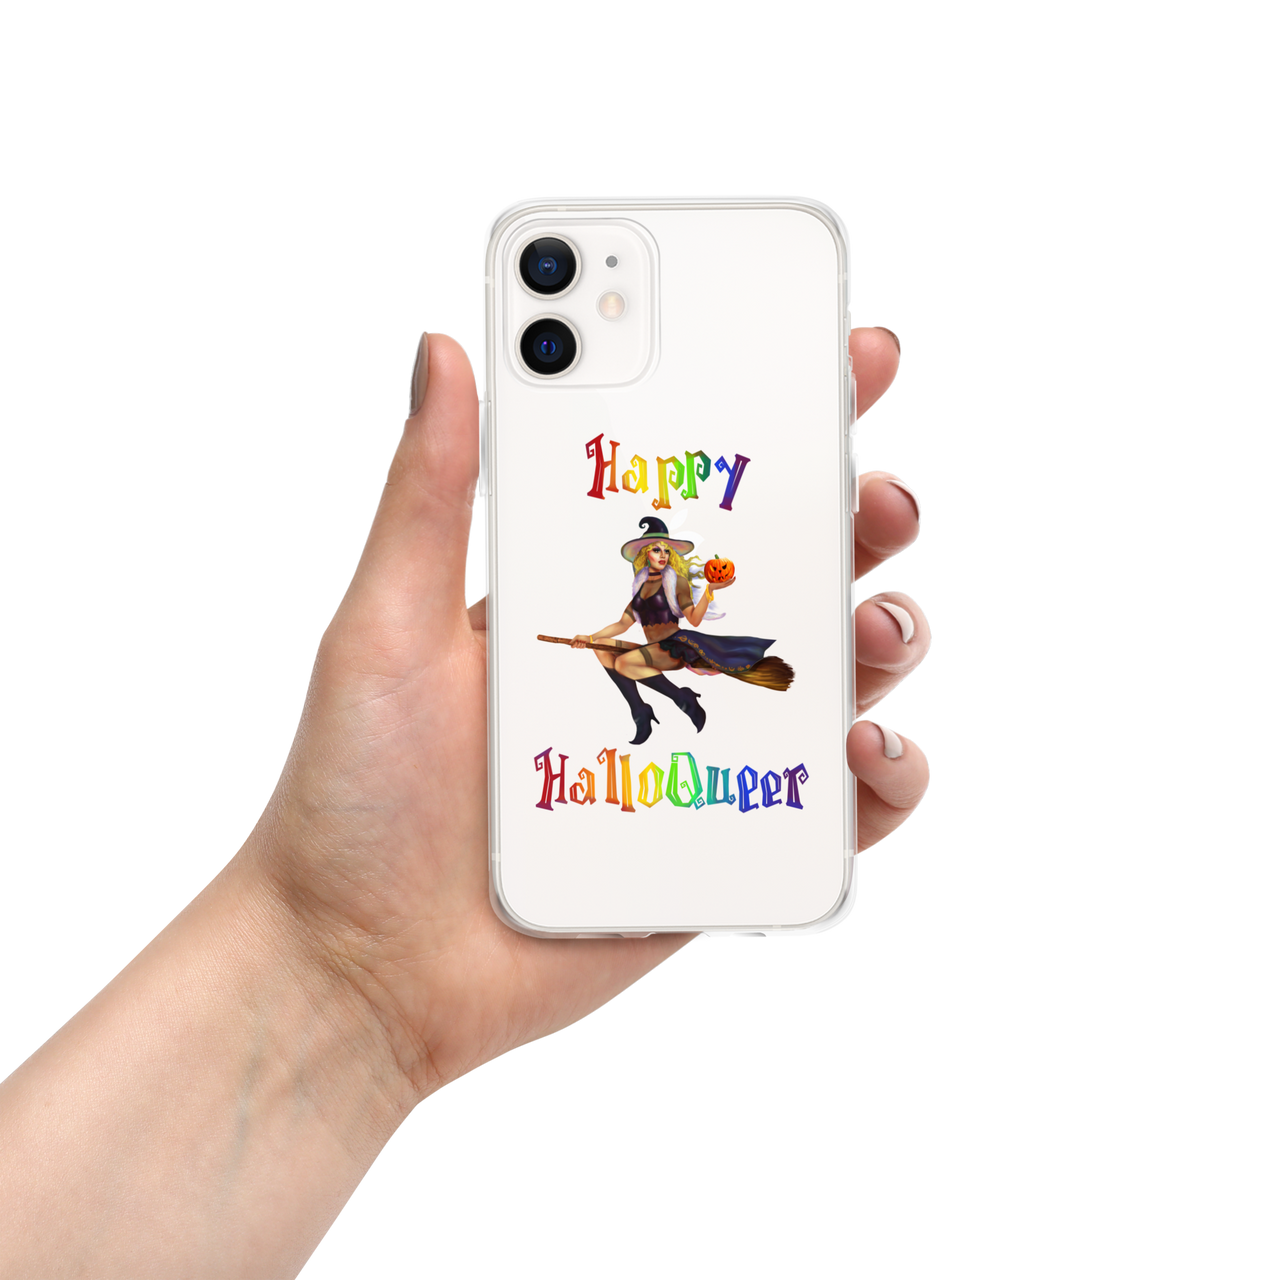 Transgender Halloween iPhone Case-Trans Pride LGBT Halloween/Happy HalloQueer SHAVA